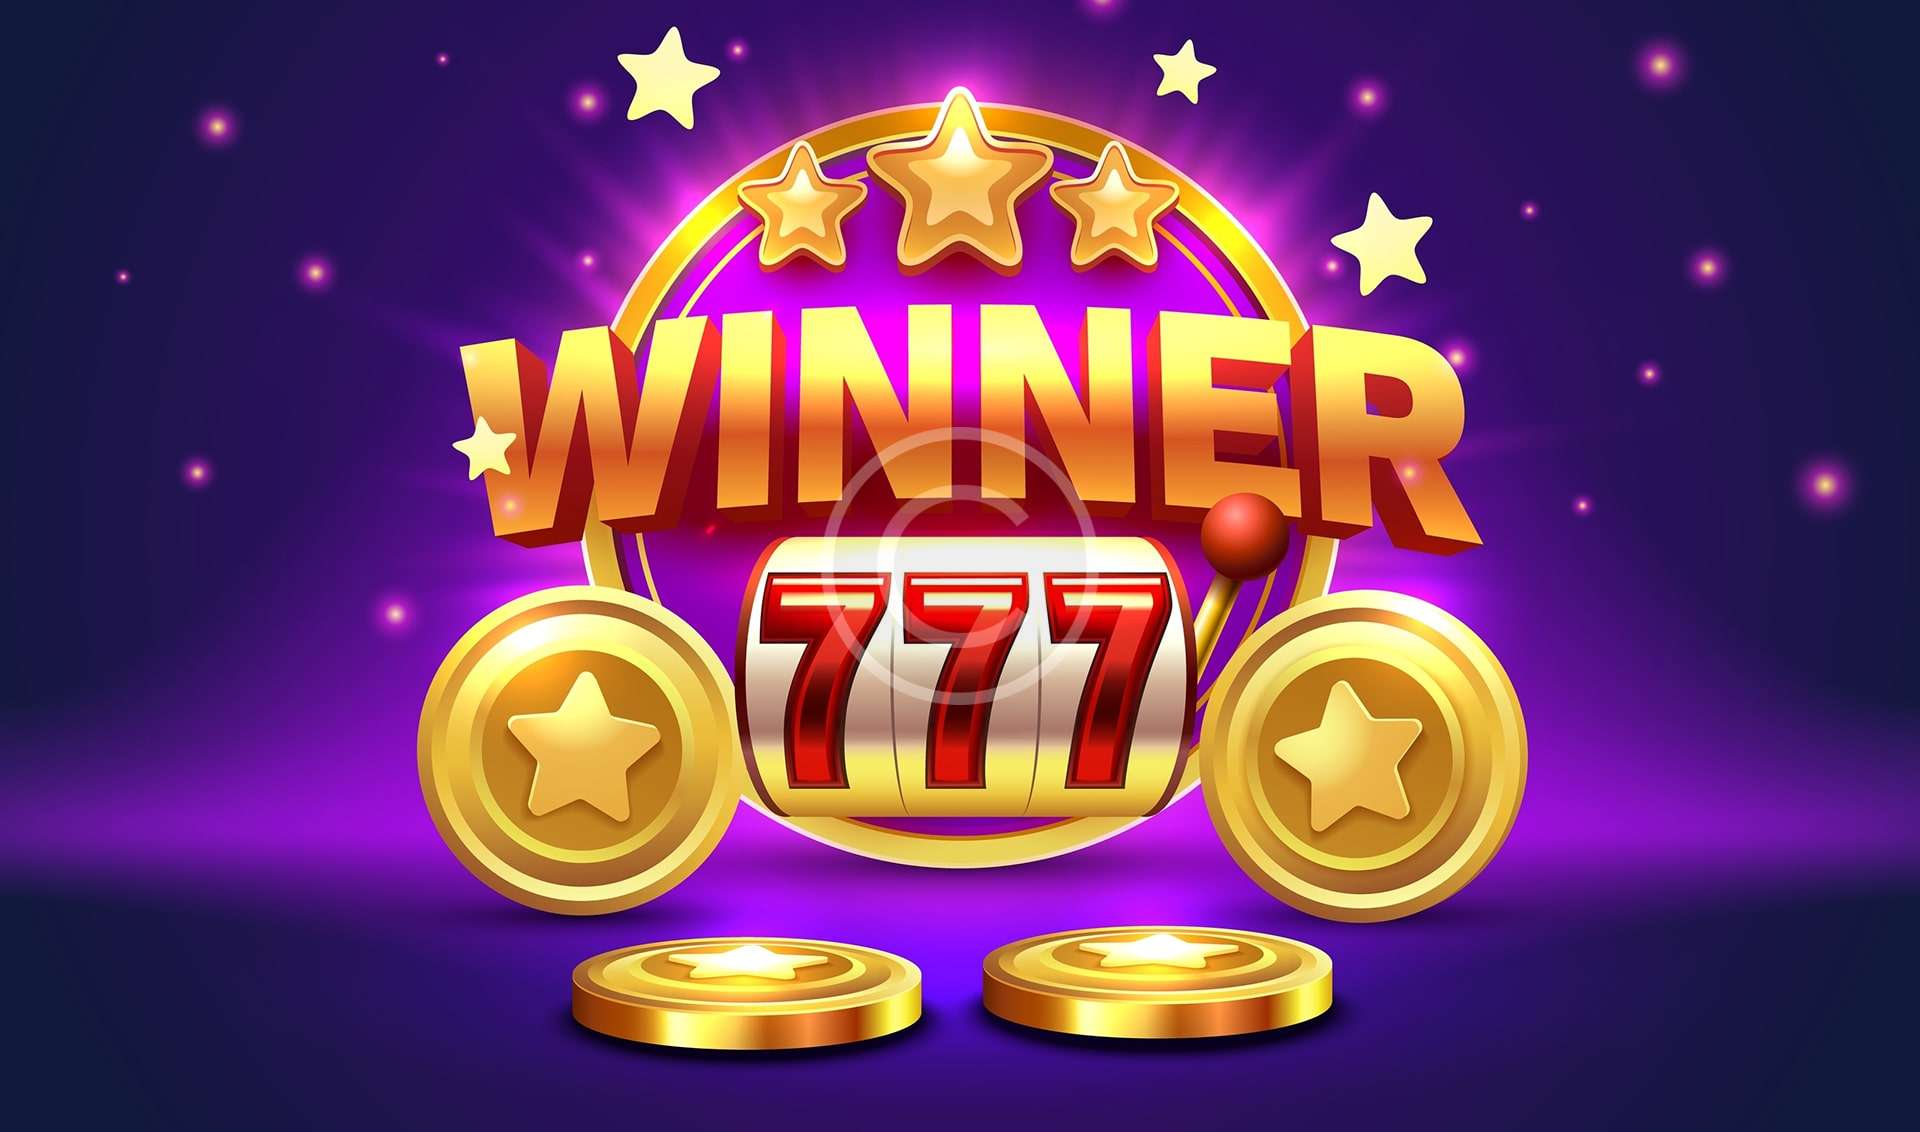 Golden winner casino